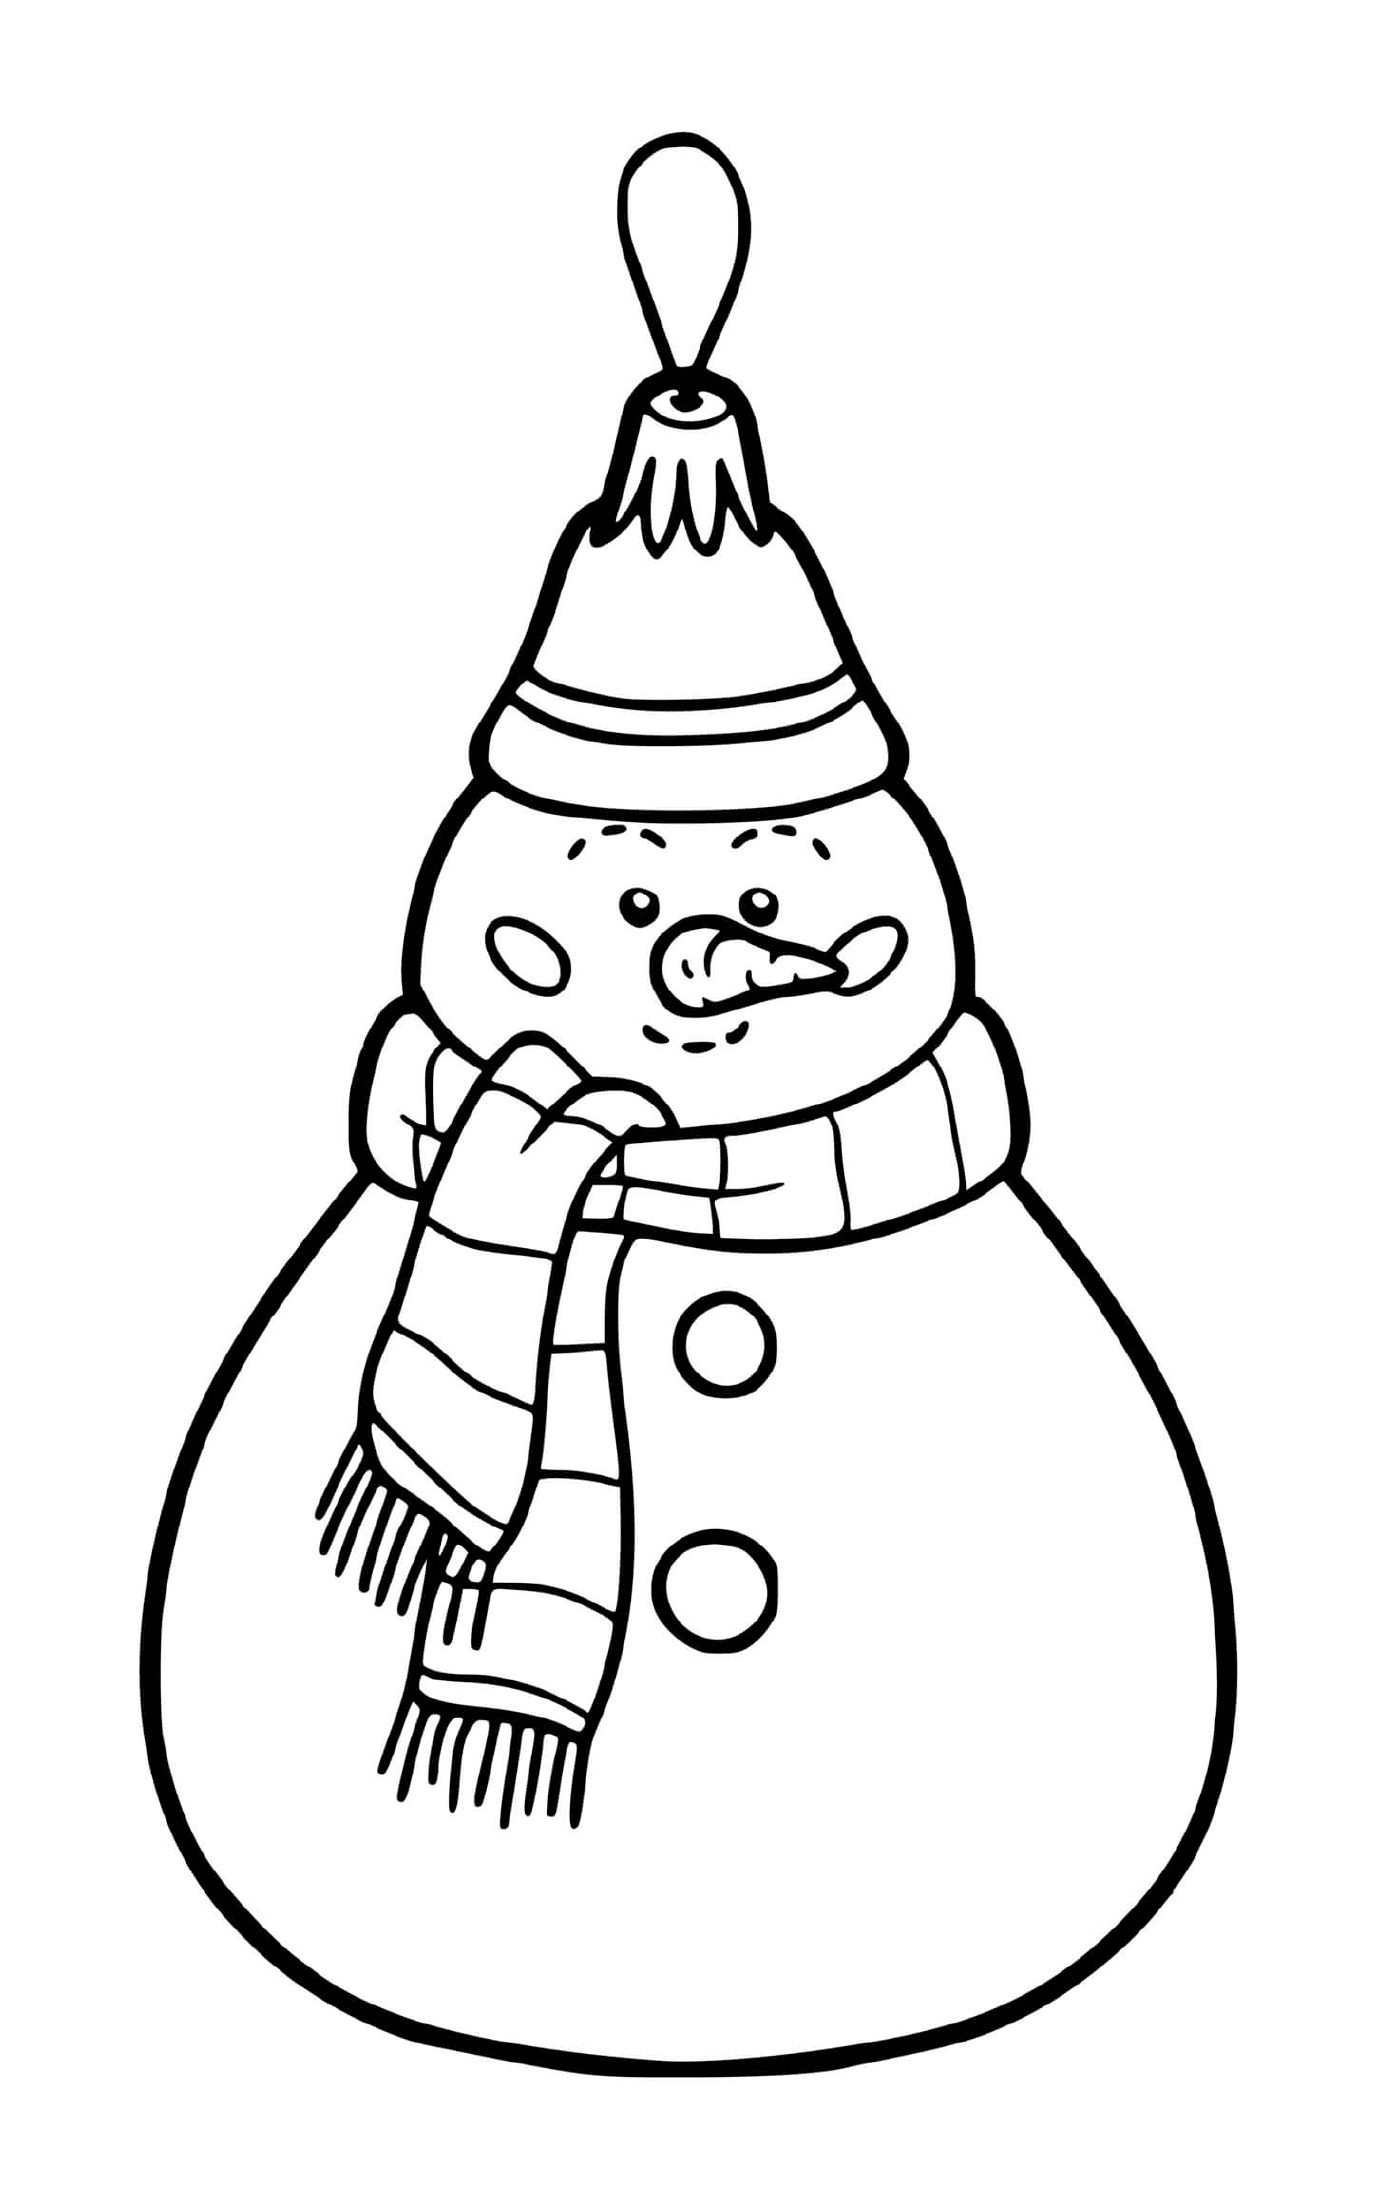   Une boule de Noël en forme de bonhomme de neige pour sapin 